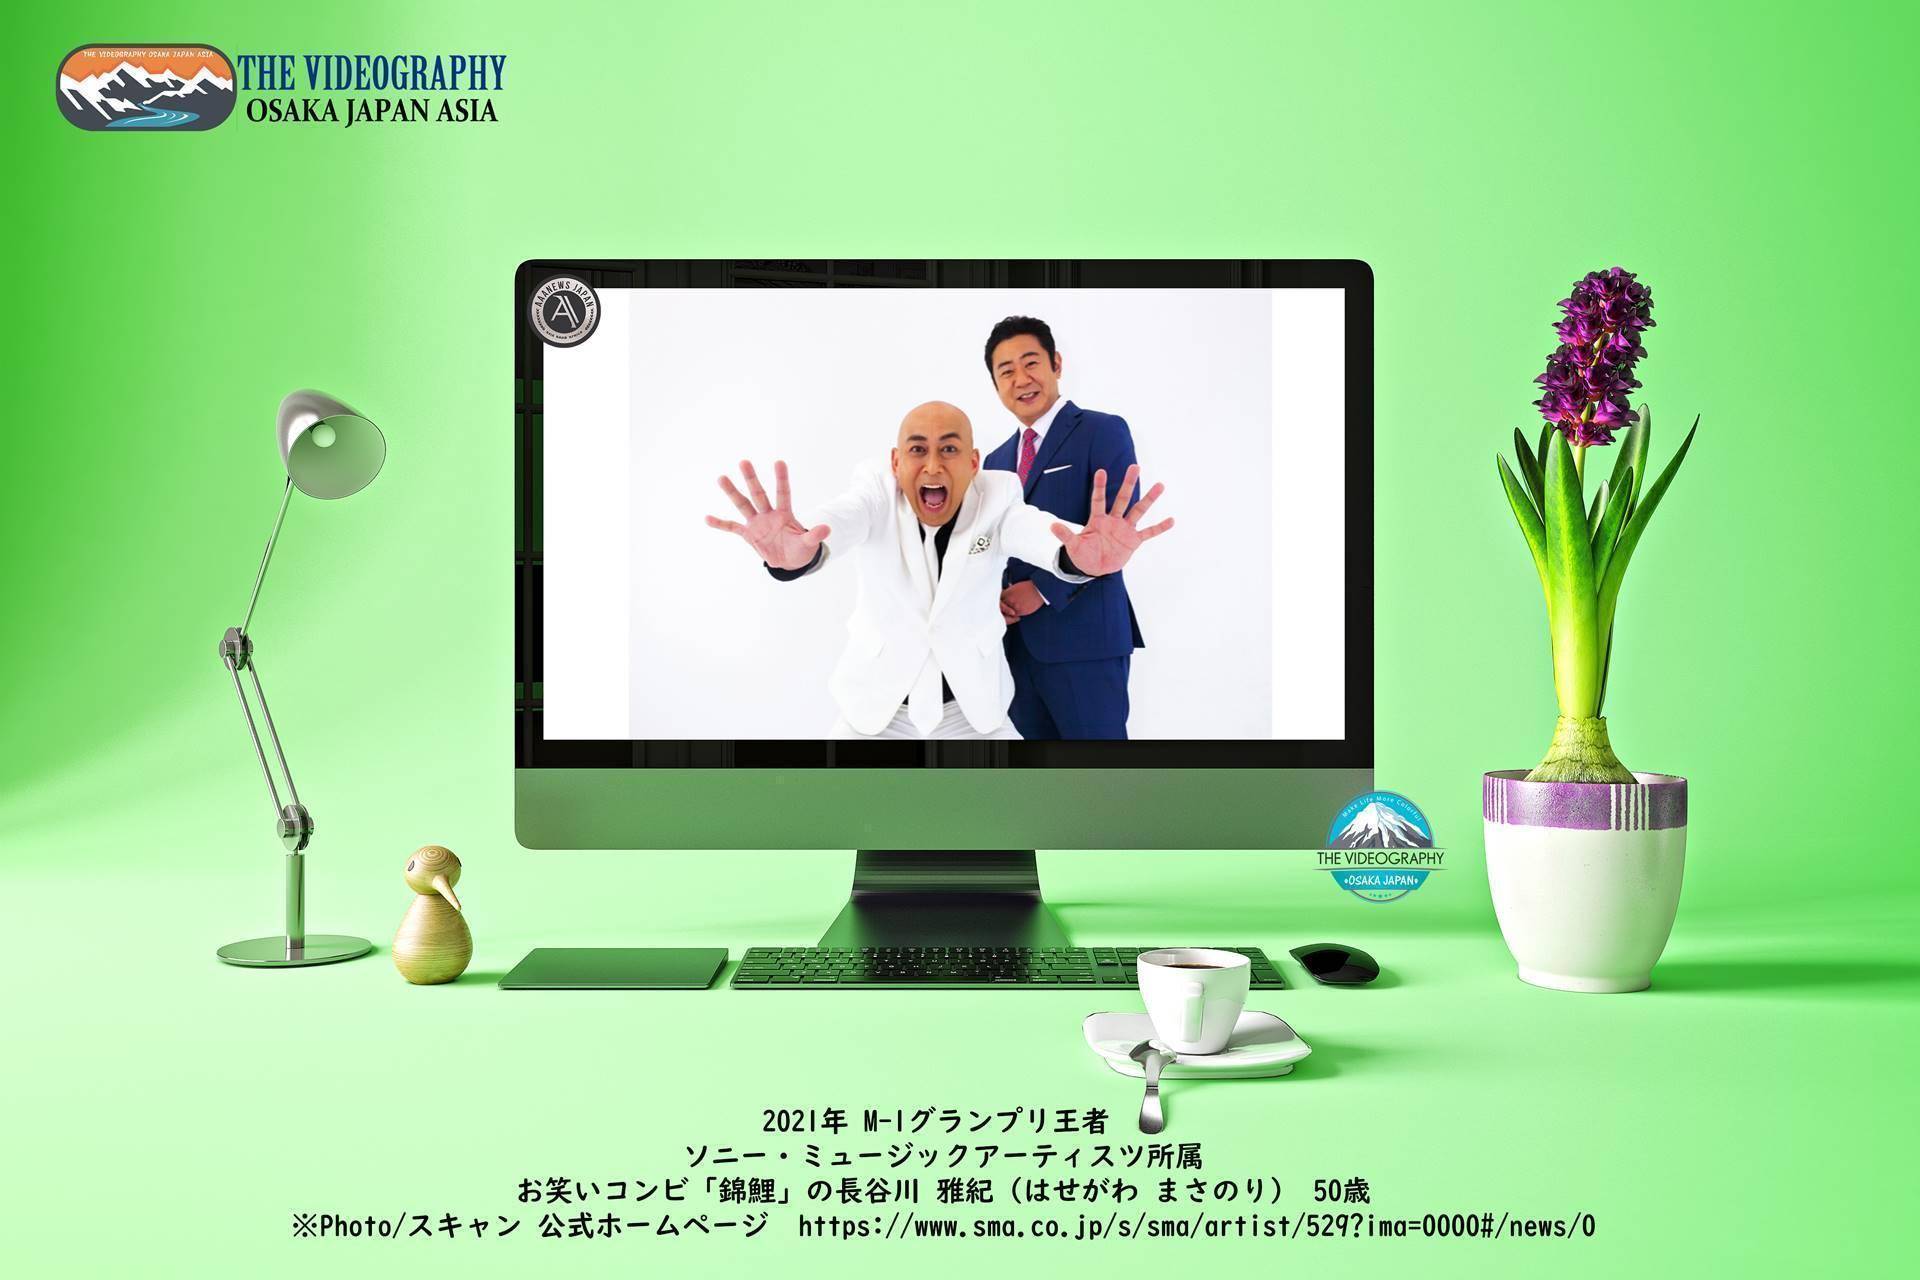 2030年の日本の自画像はお笑いコンビ「錦鯉」の長谷川雅紀さん